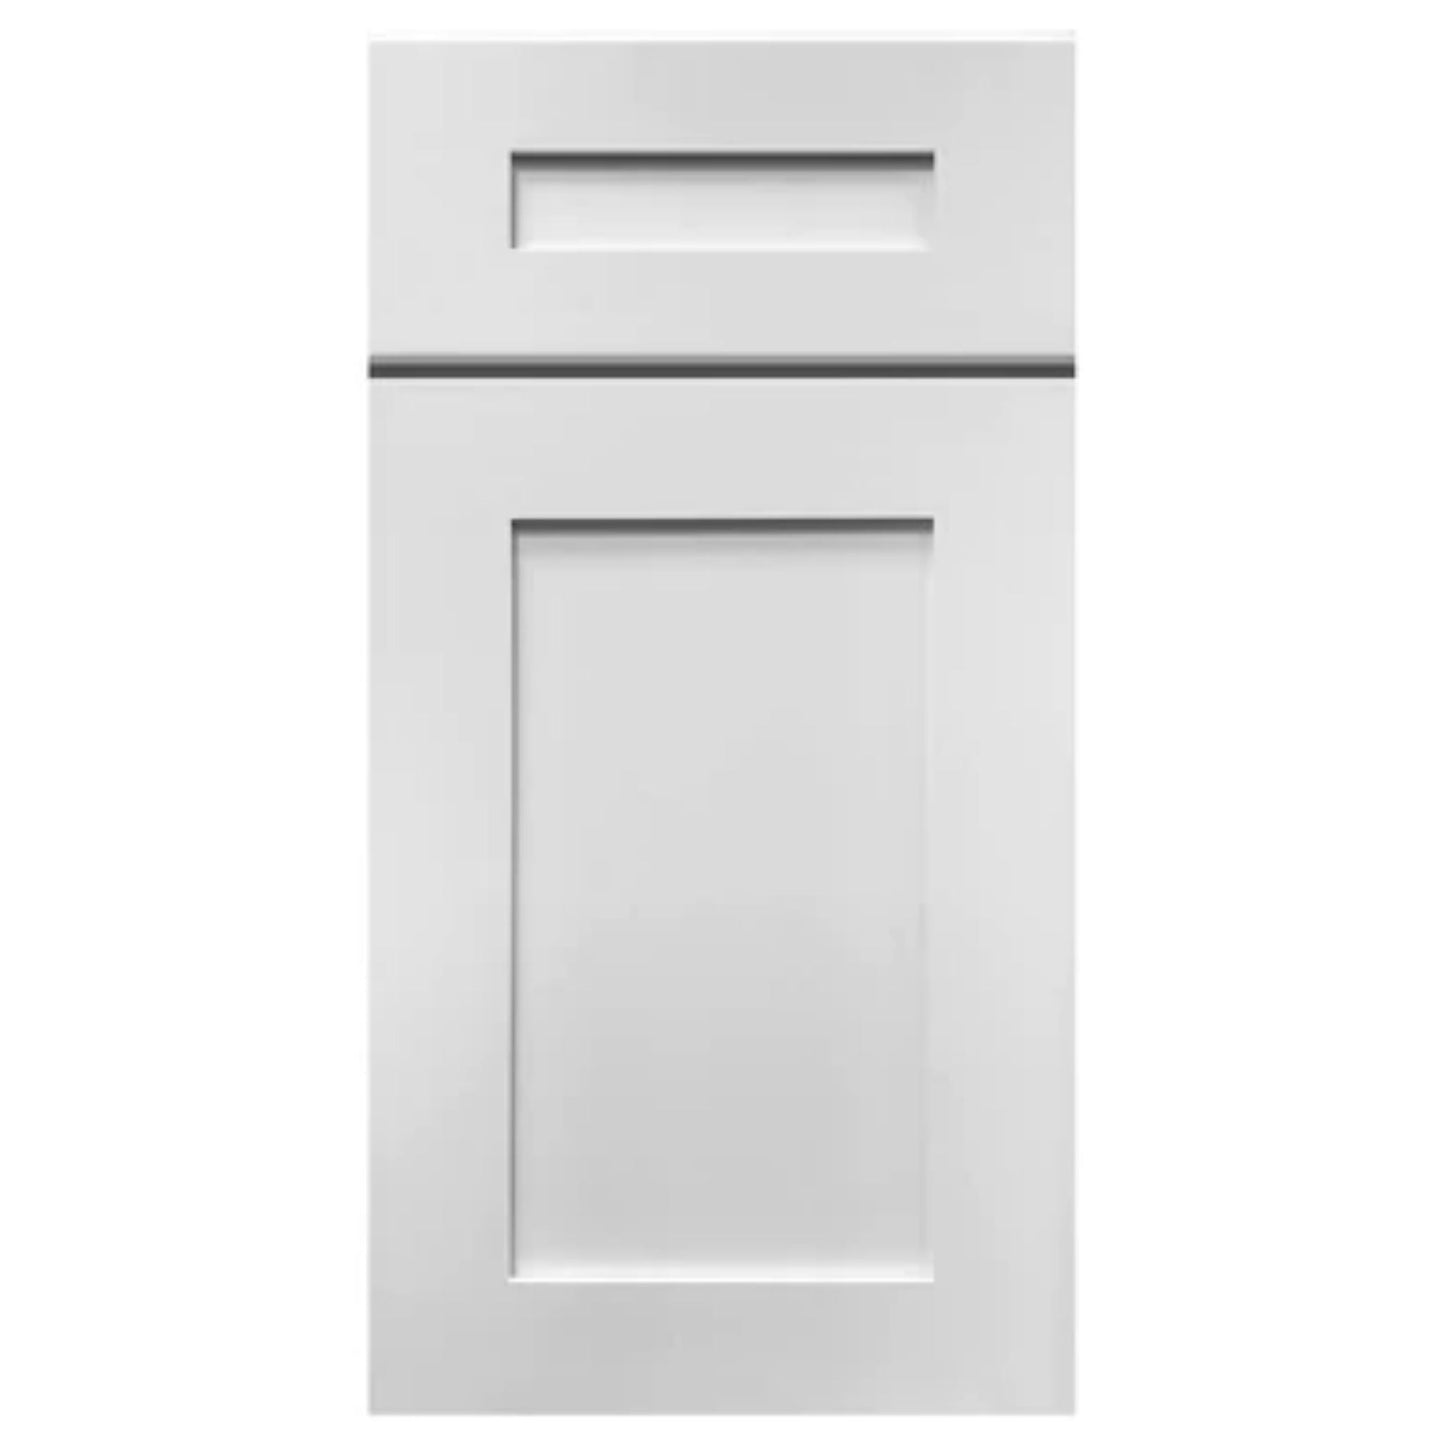 LessCare 33" x 24" x 12" Alpina White Wall Kitchen Cabinet - W3324